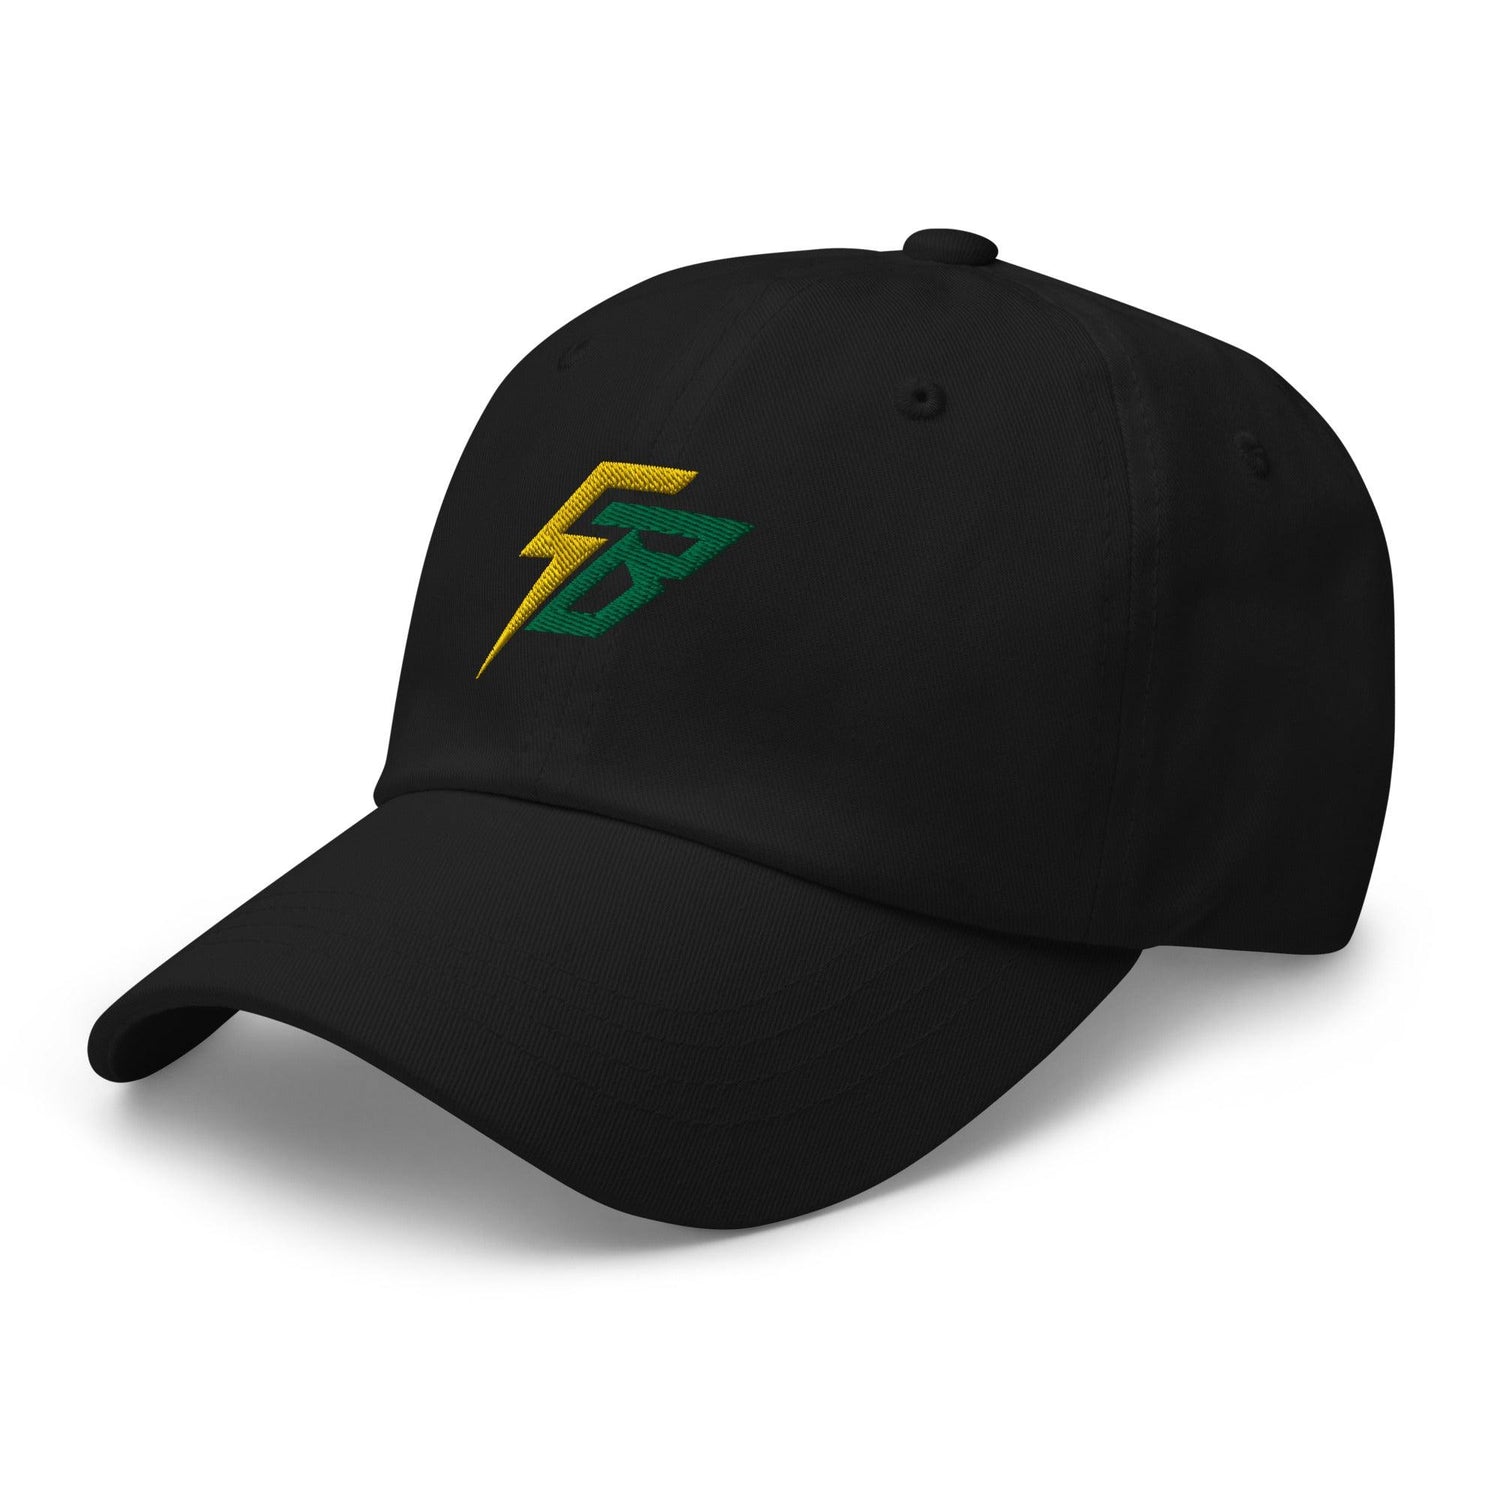 Skye Bolt "Electric" hat - Fan Arch